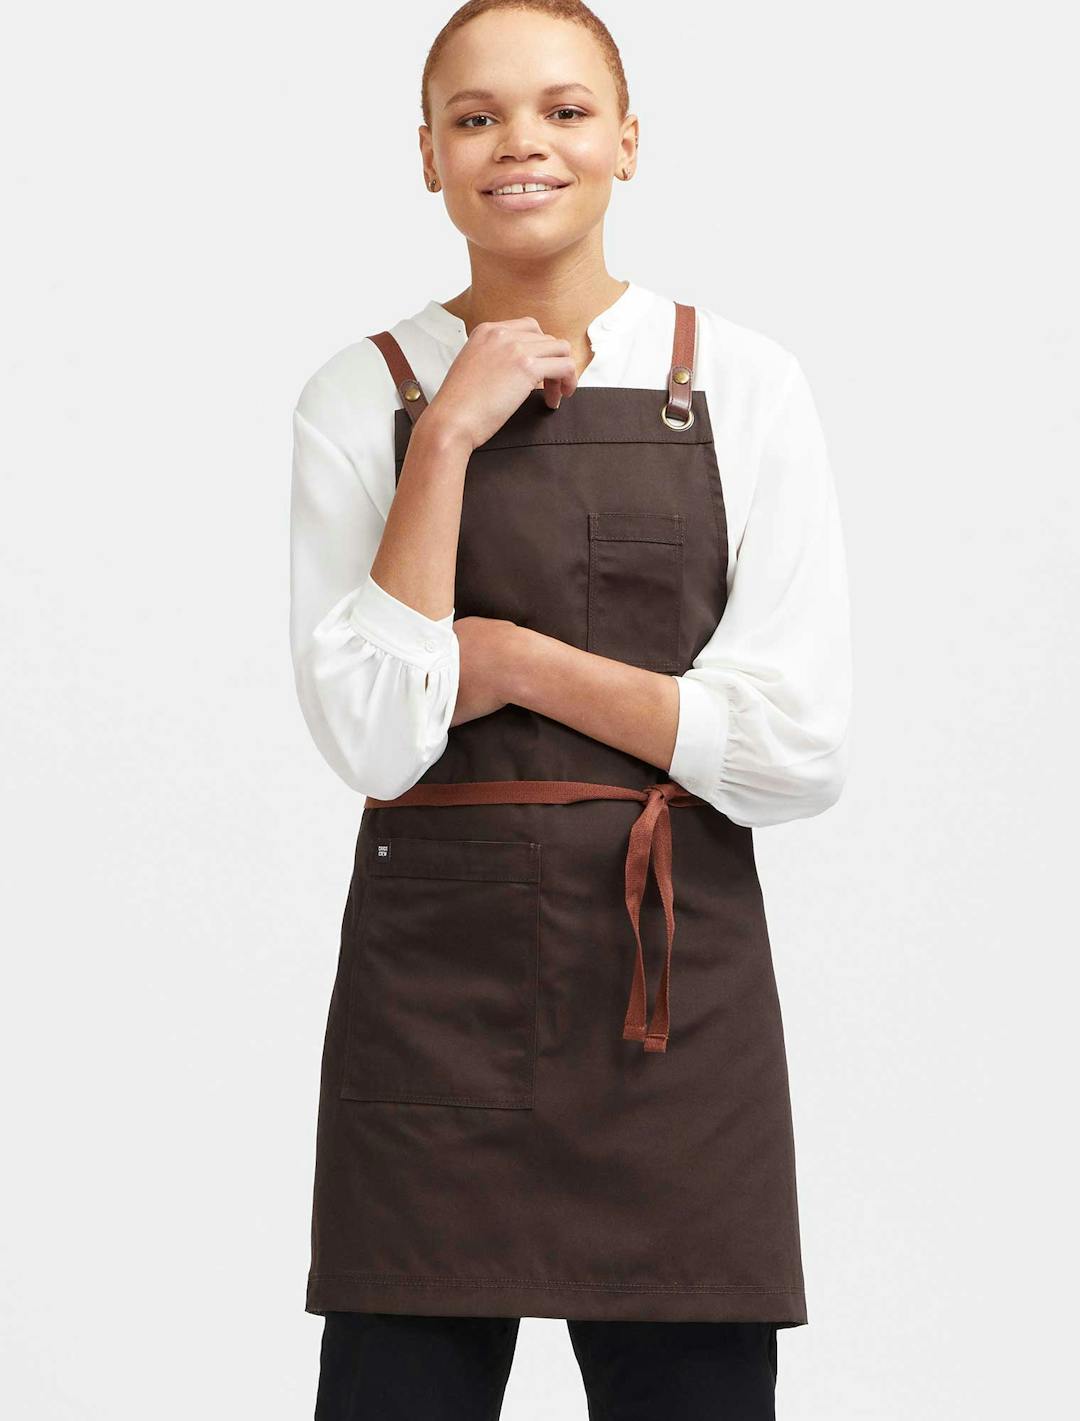 Waitress Uniforms Unique And Modern Waitress Clothes